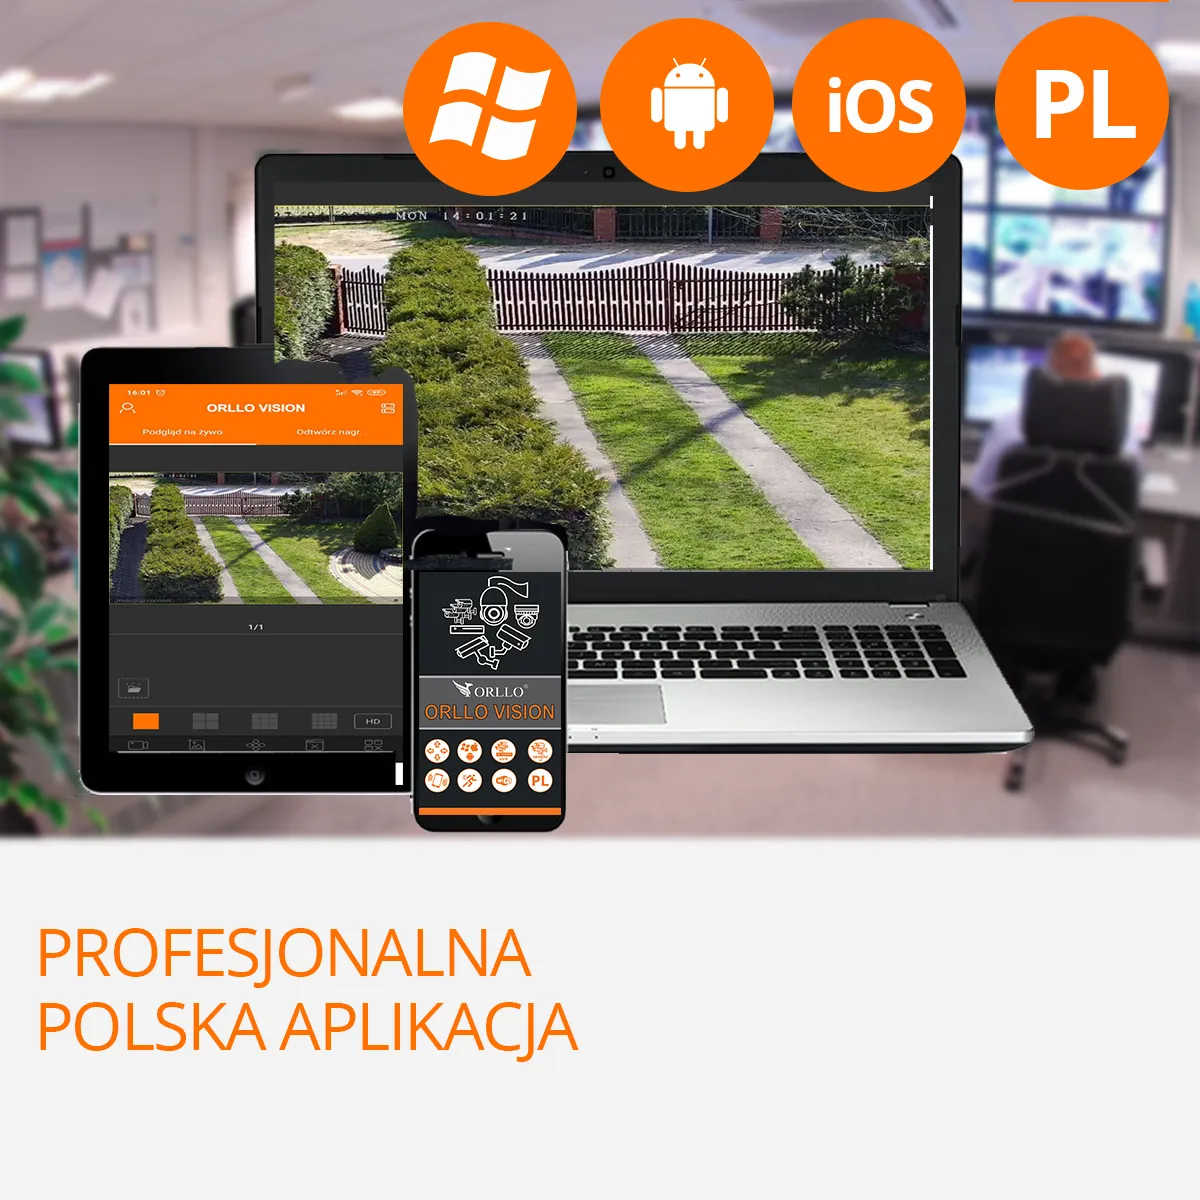 kamera do monitoringu polska aplikacja app orllo.pl